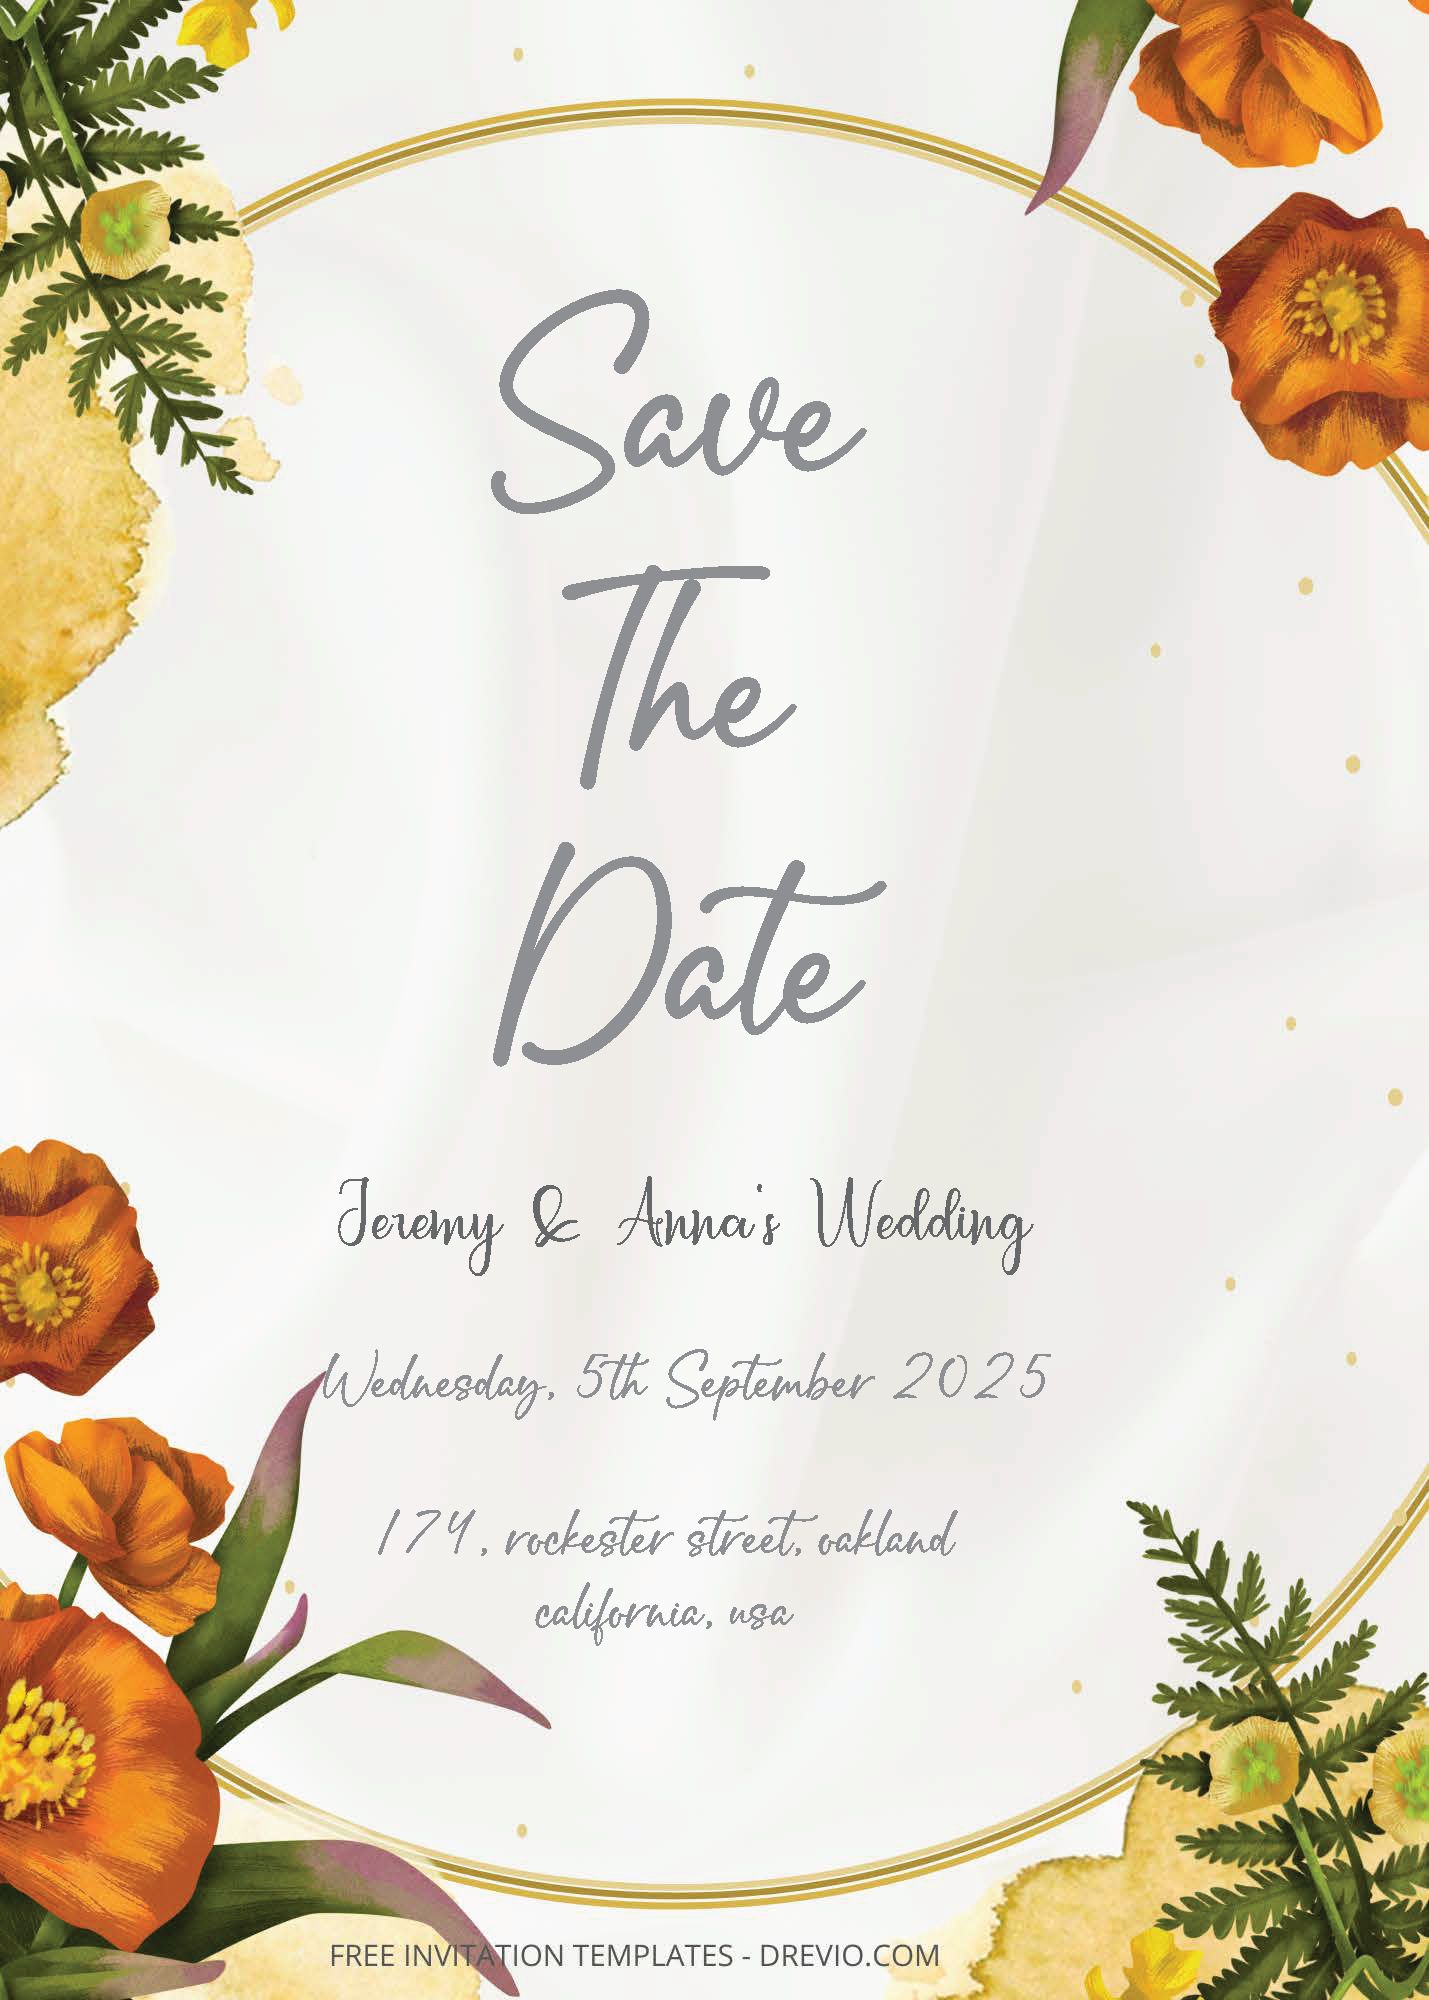 ( Free Editable PDF ) Sweet Summer Wedding Invitation Templates Three